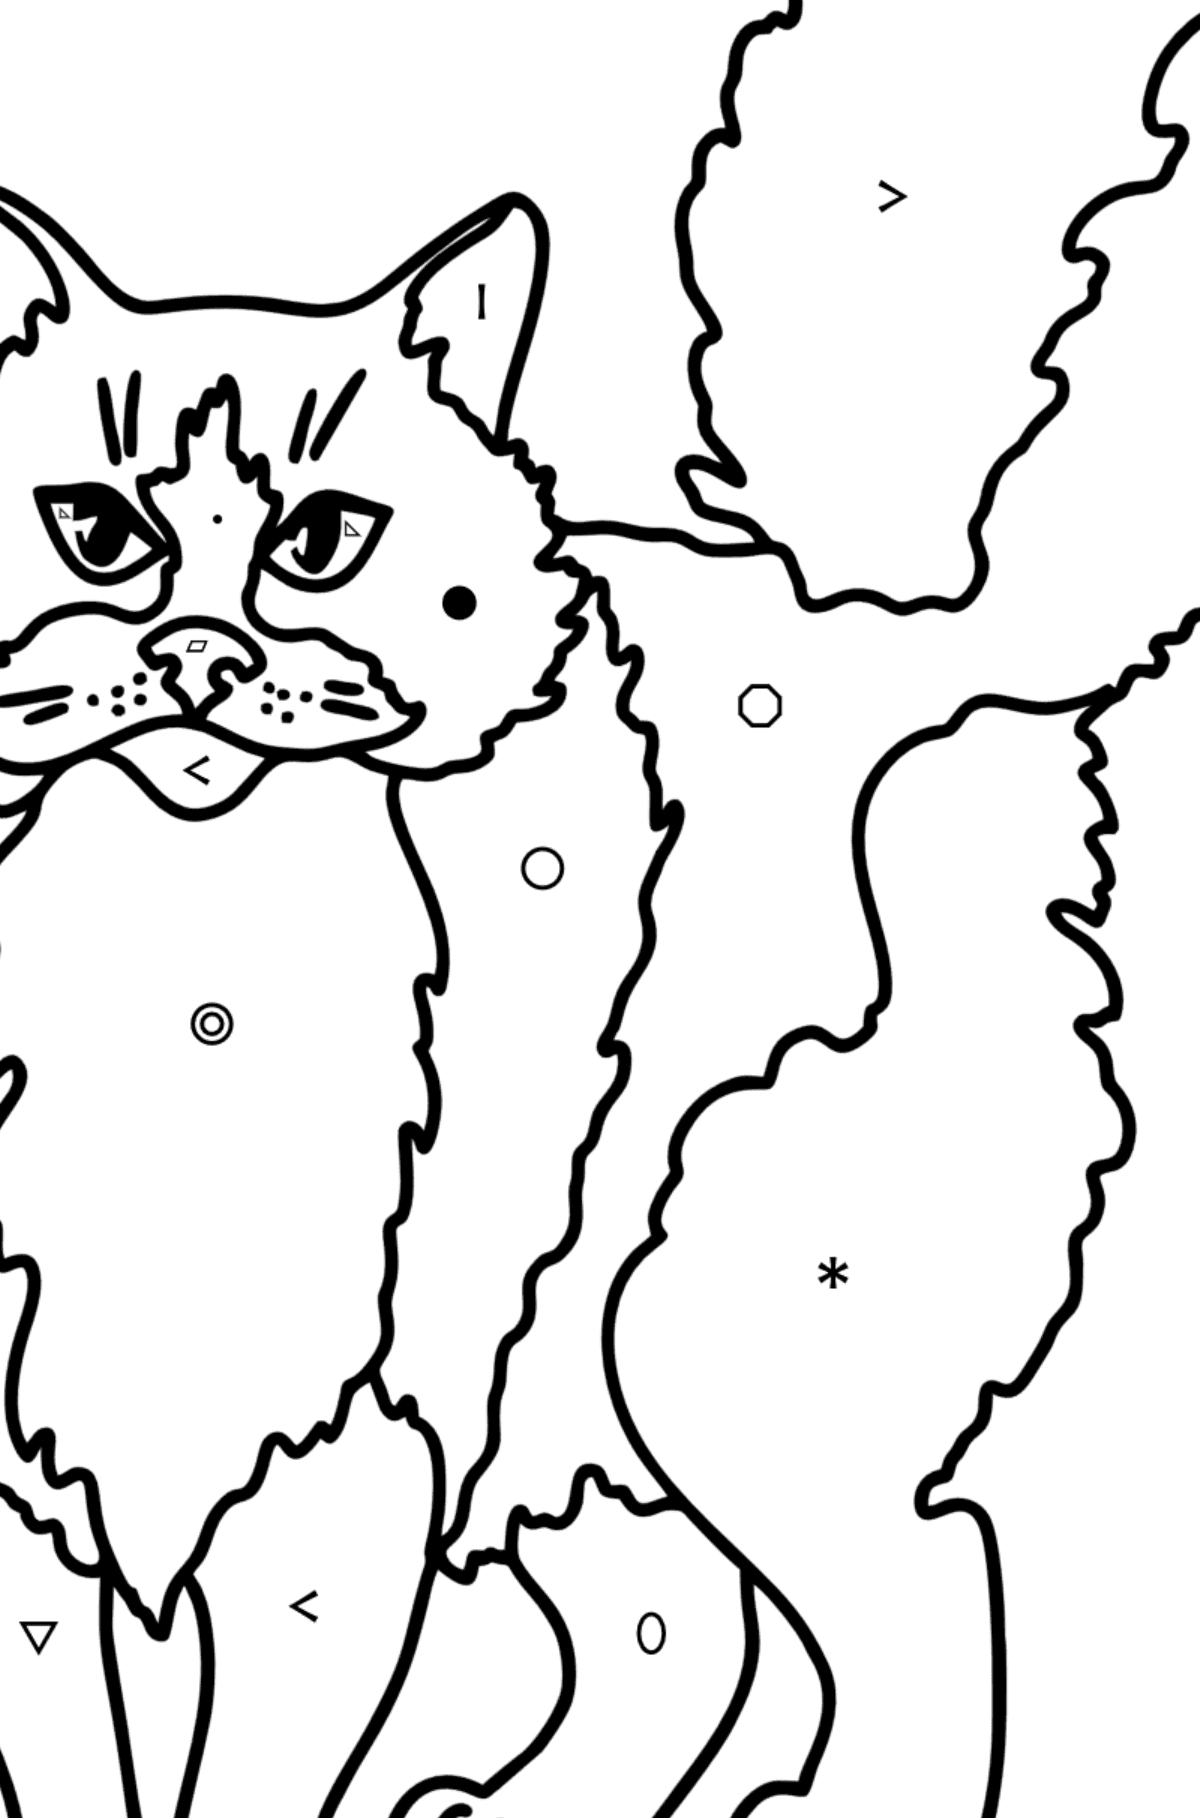 Desenho para colorir do Gato Ragdoll - Colorir por Símbolos para Crianças